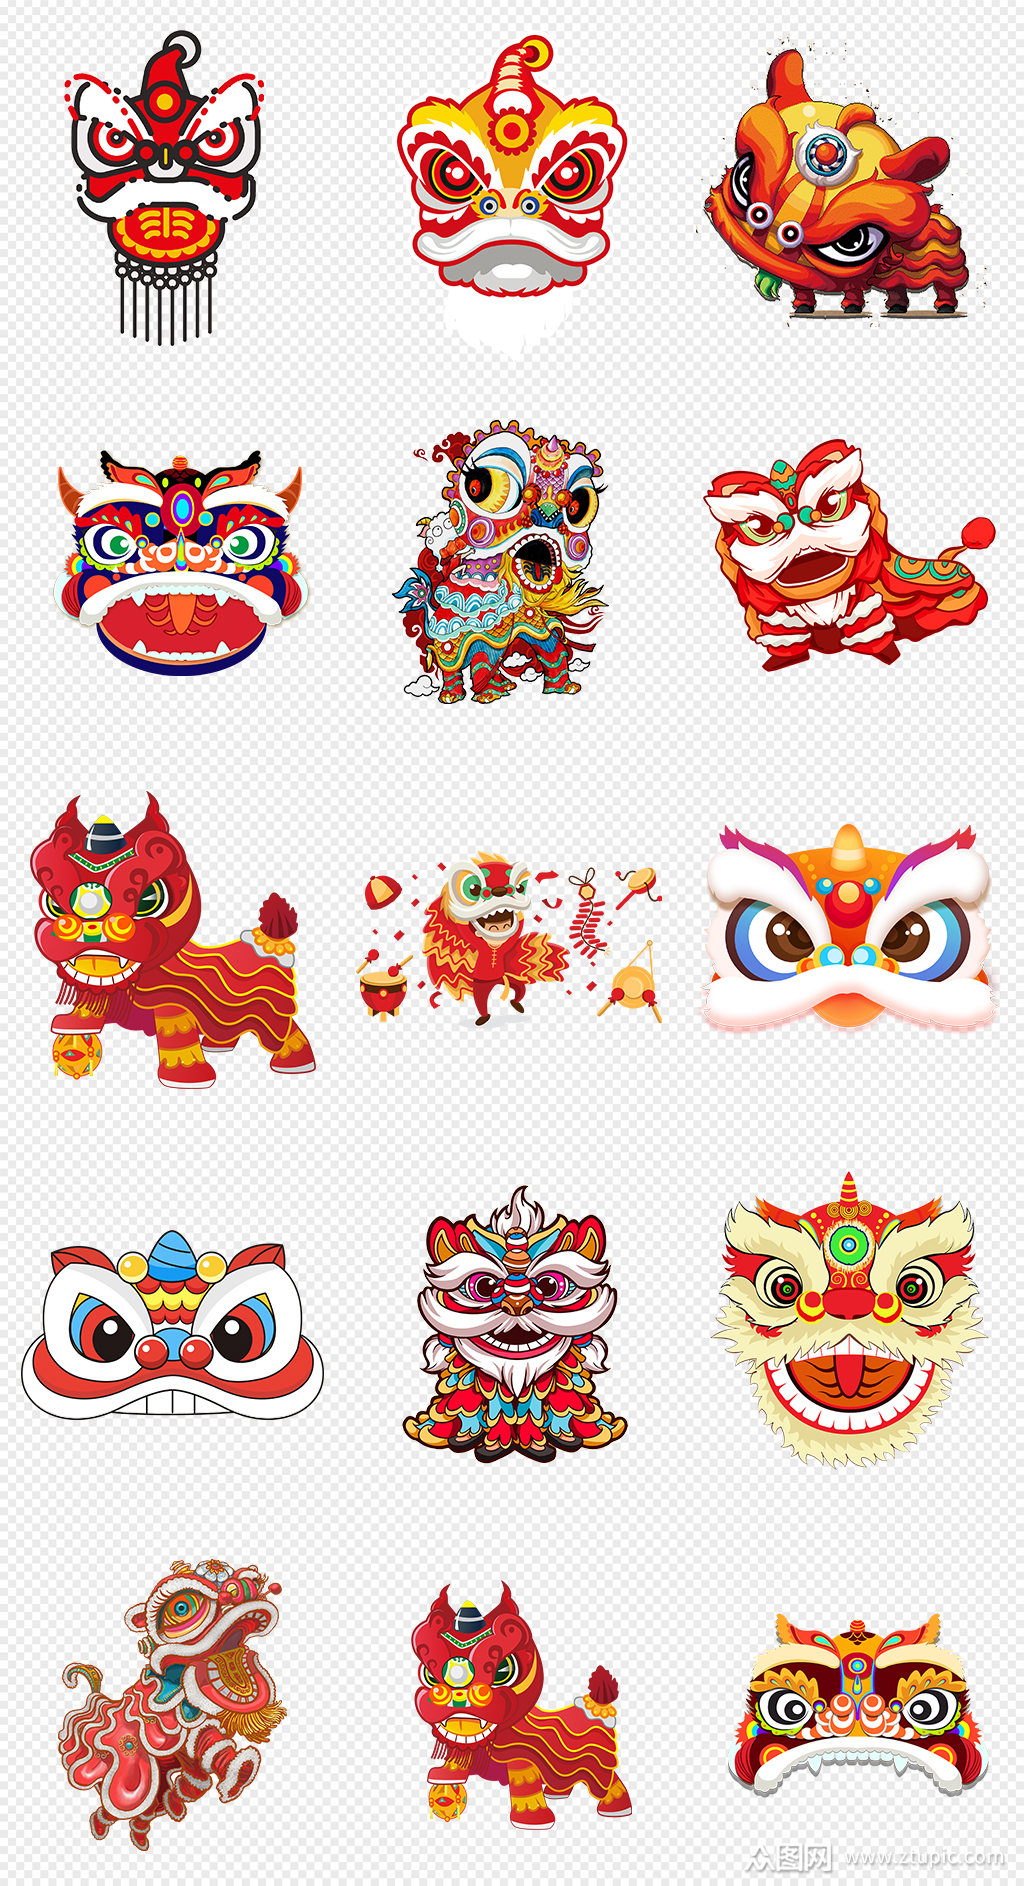 中国风舞狮卡通狮子头素材素材